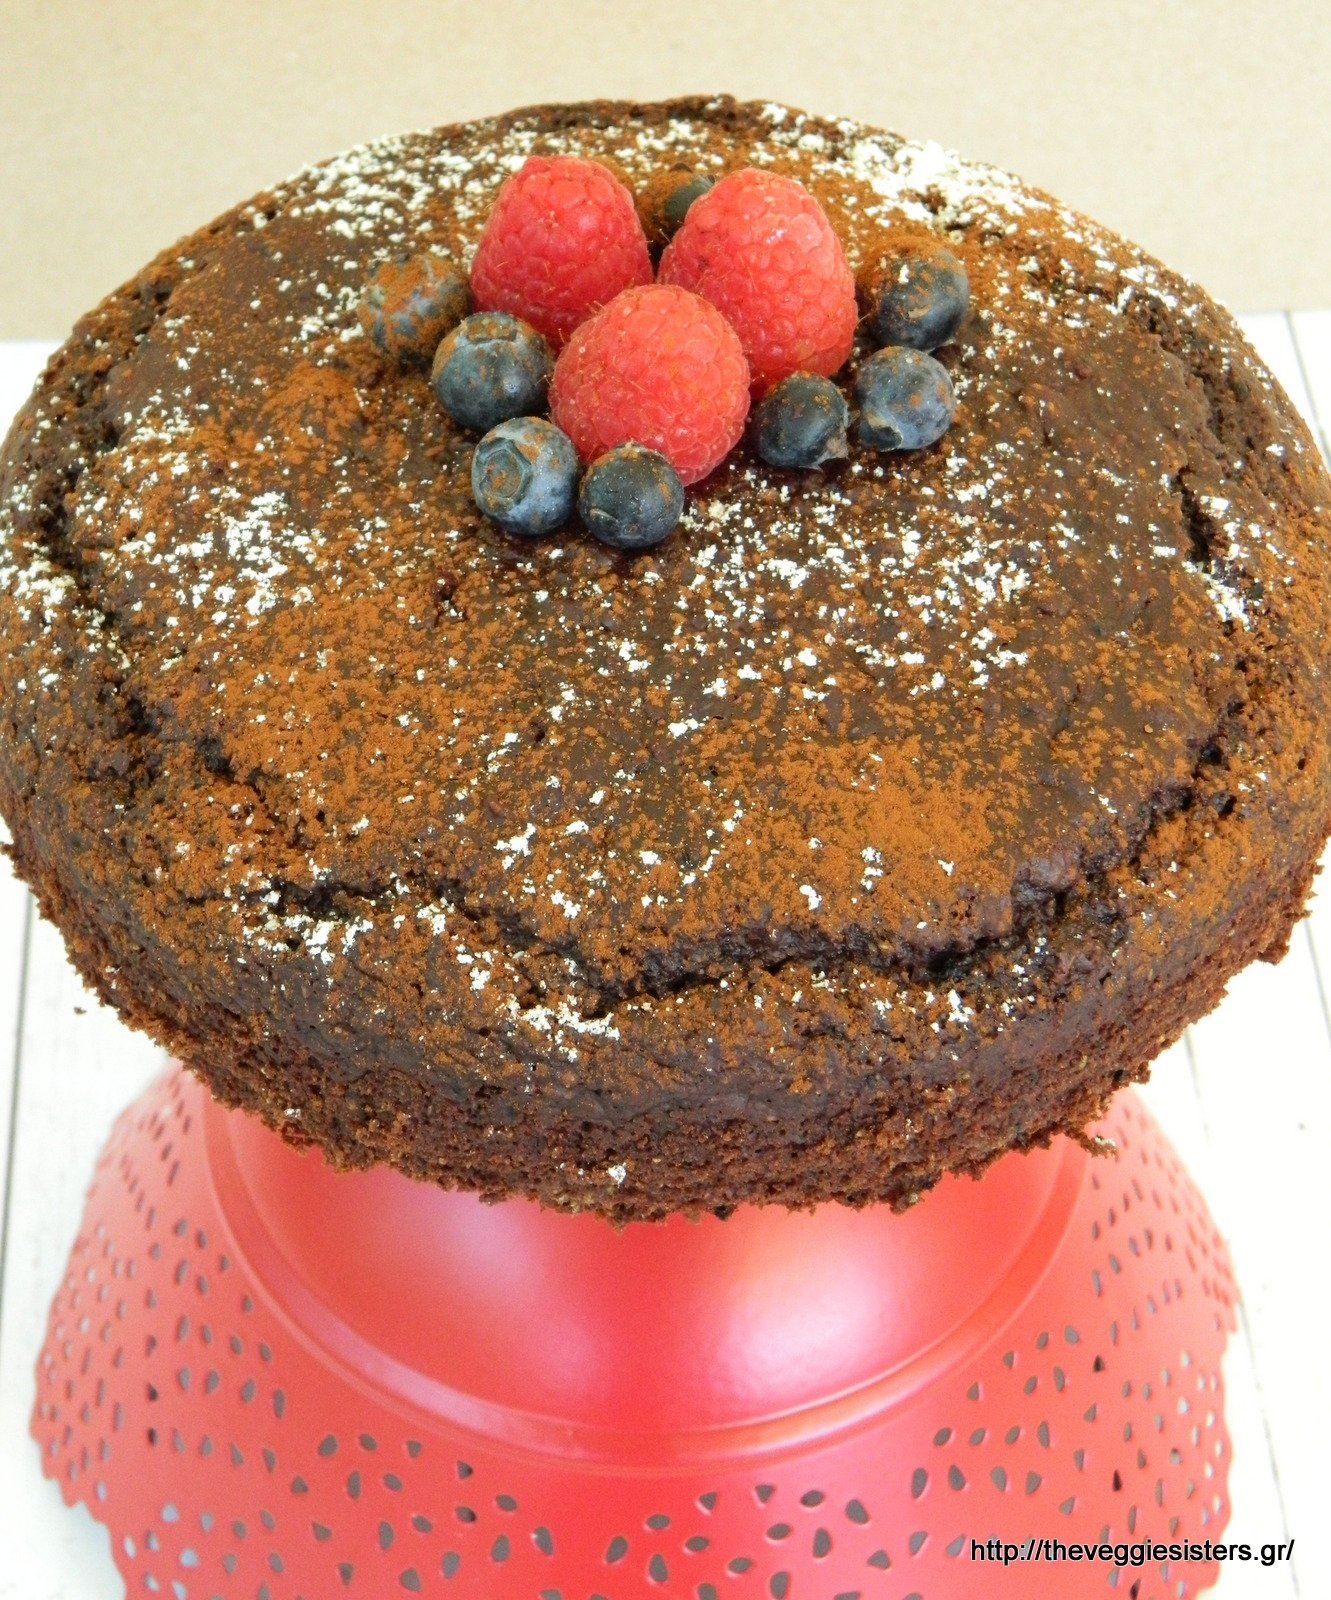 Σοκολατένιο κέικ με μύρτιλλα - Chocolate blueberry cake